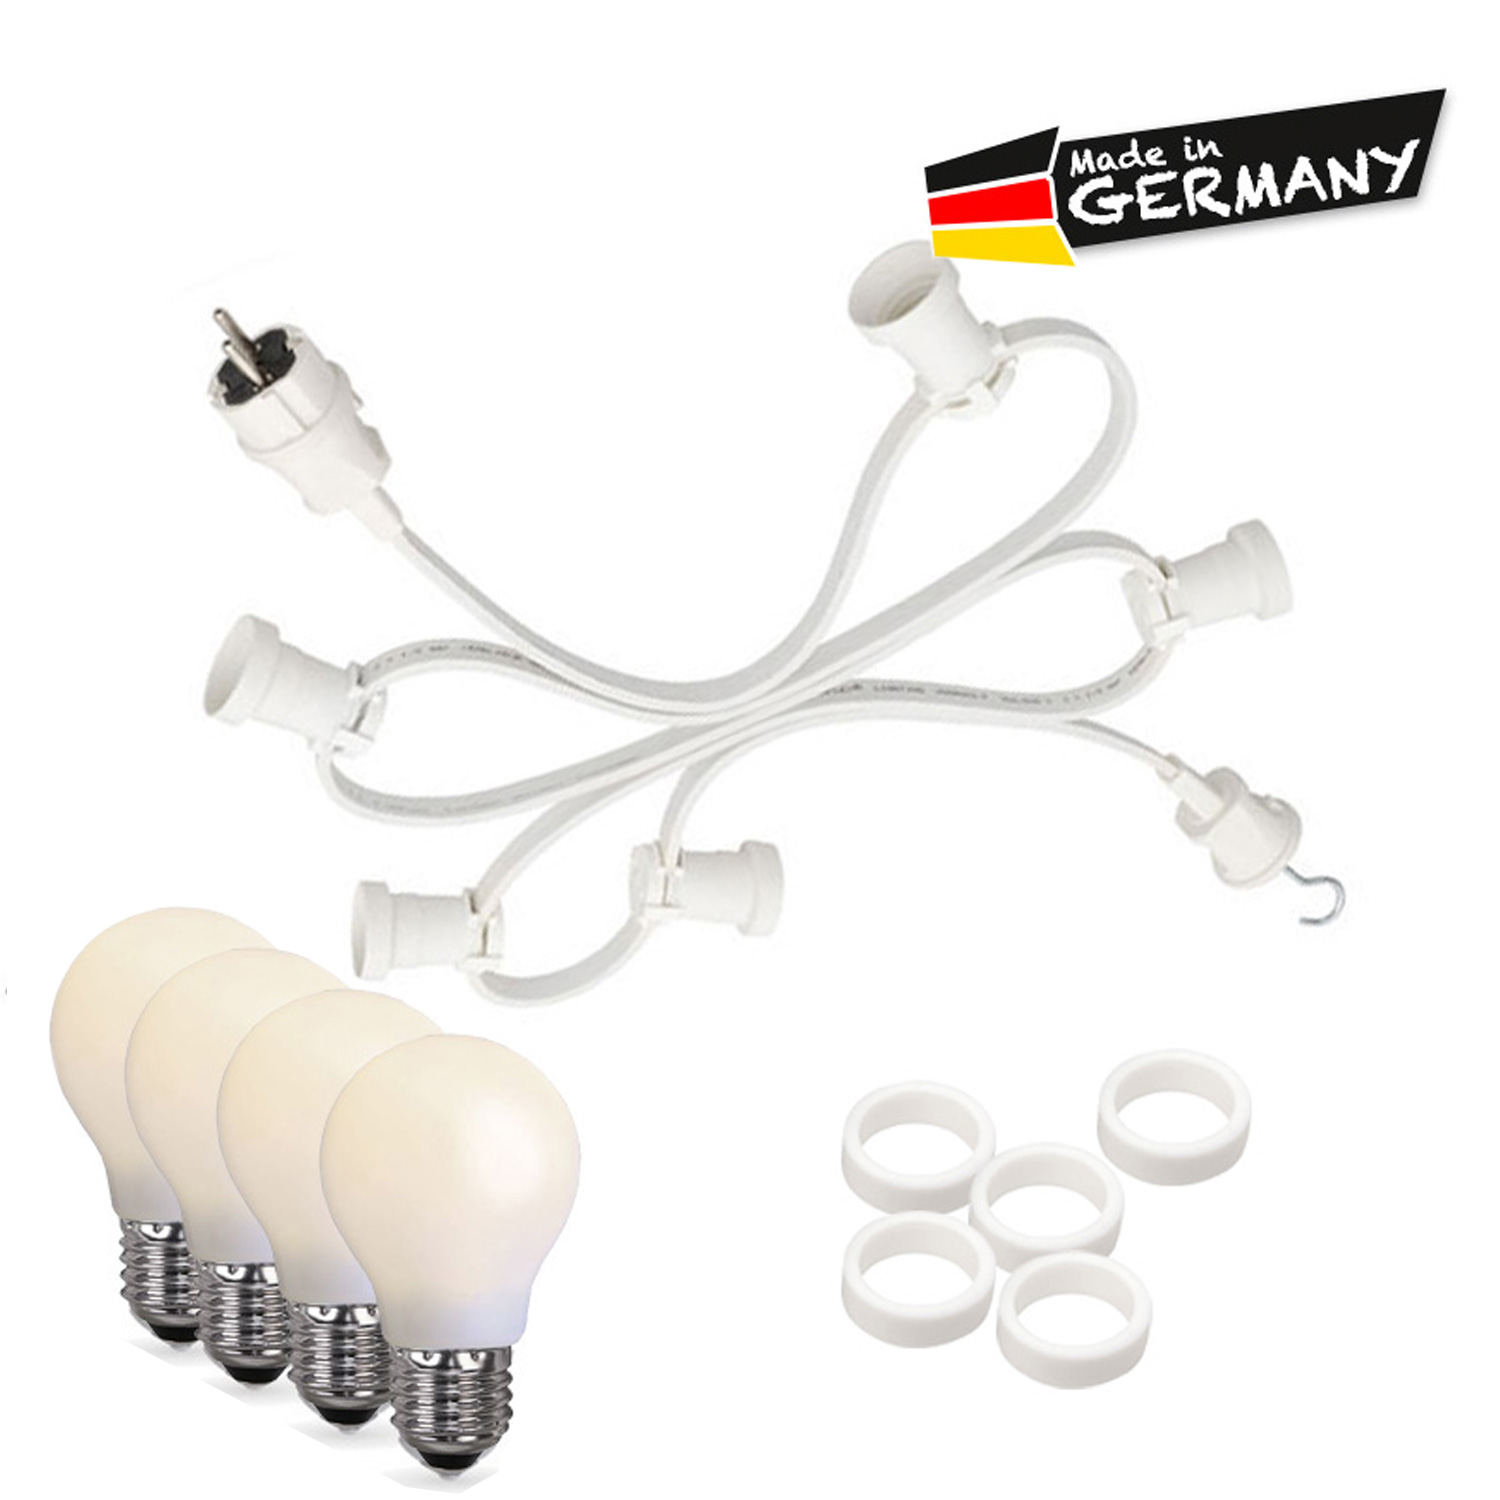 Illu-/Partylichterkette 20m - Außen - Made in Germany - 30 bruchfeste opale LED Tropfenlampen